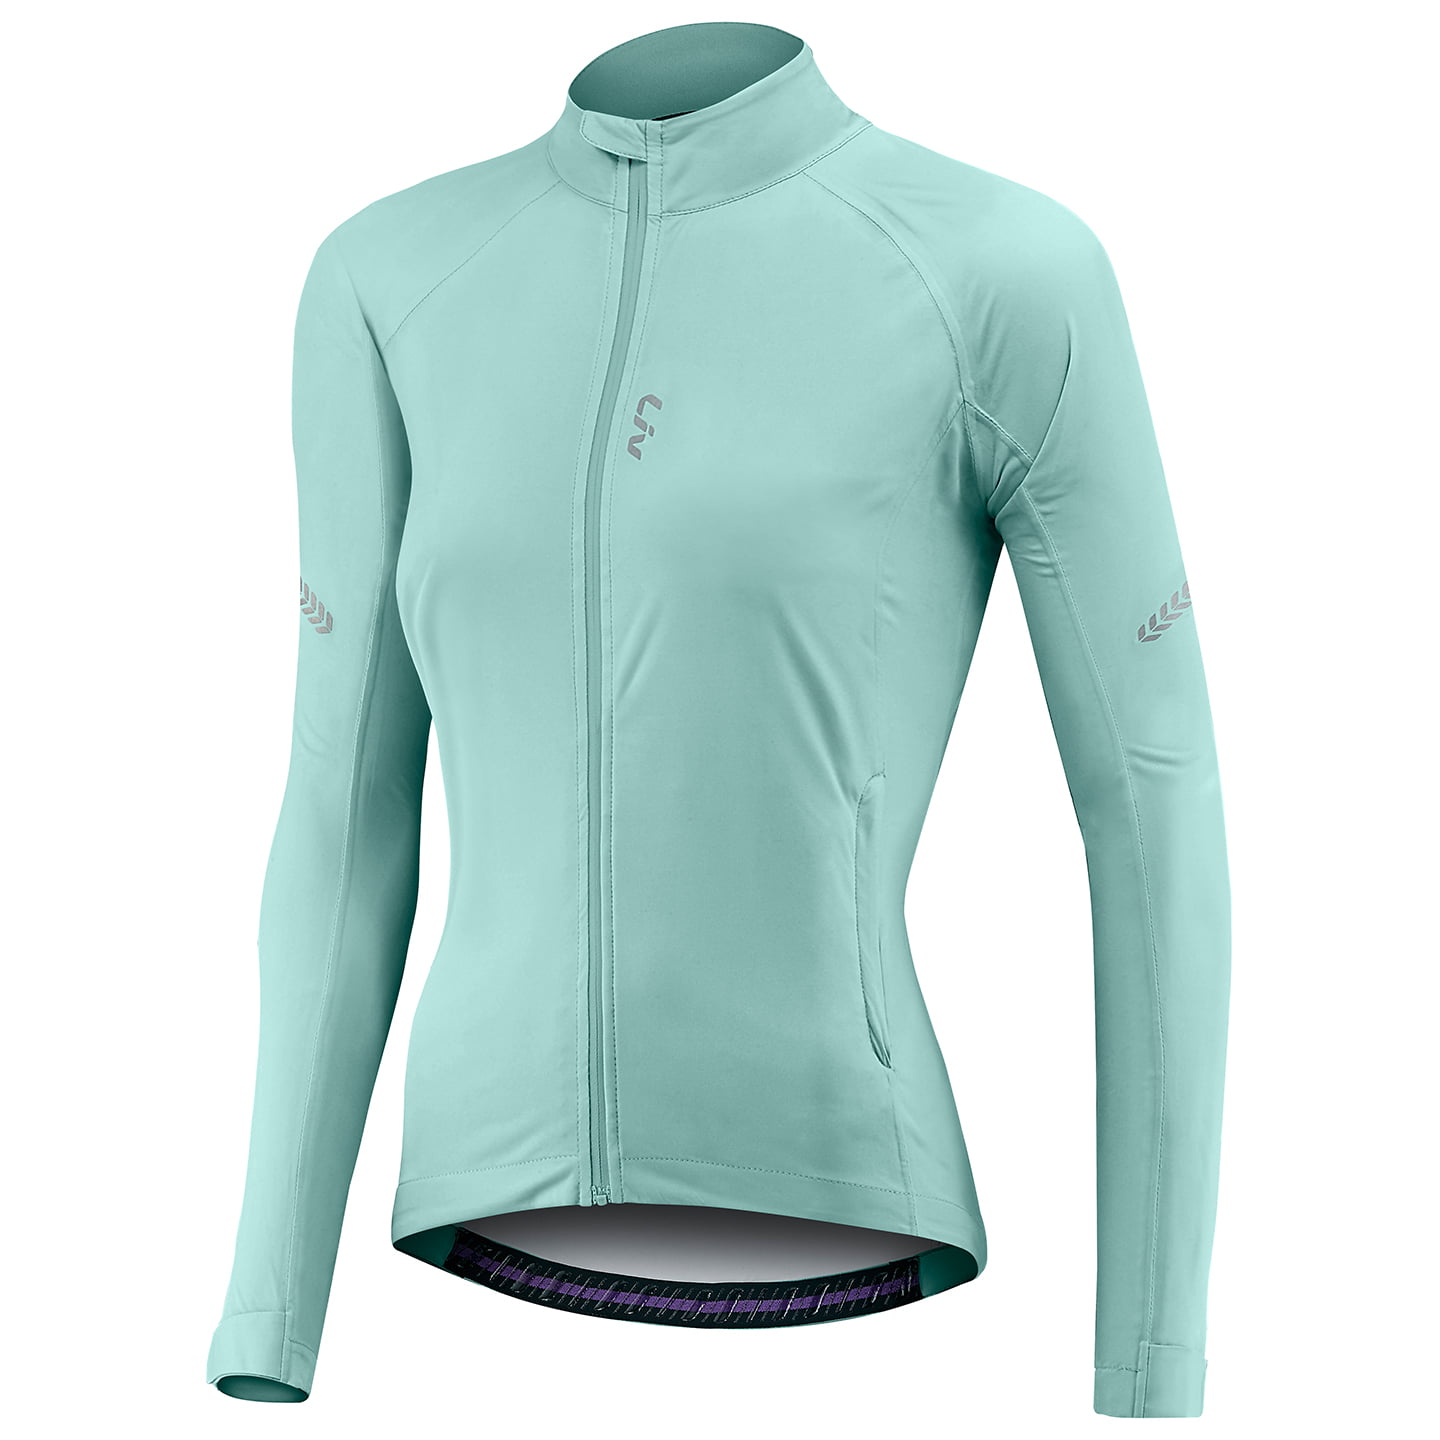 LIV Delphin Women’s Waterproof Jacket Women’s Waterproof Jacket, size L, Cycle jacket, Cycling clothing